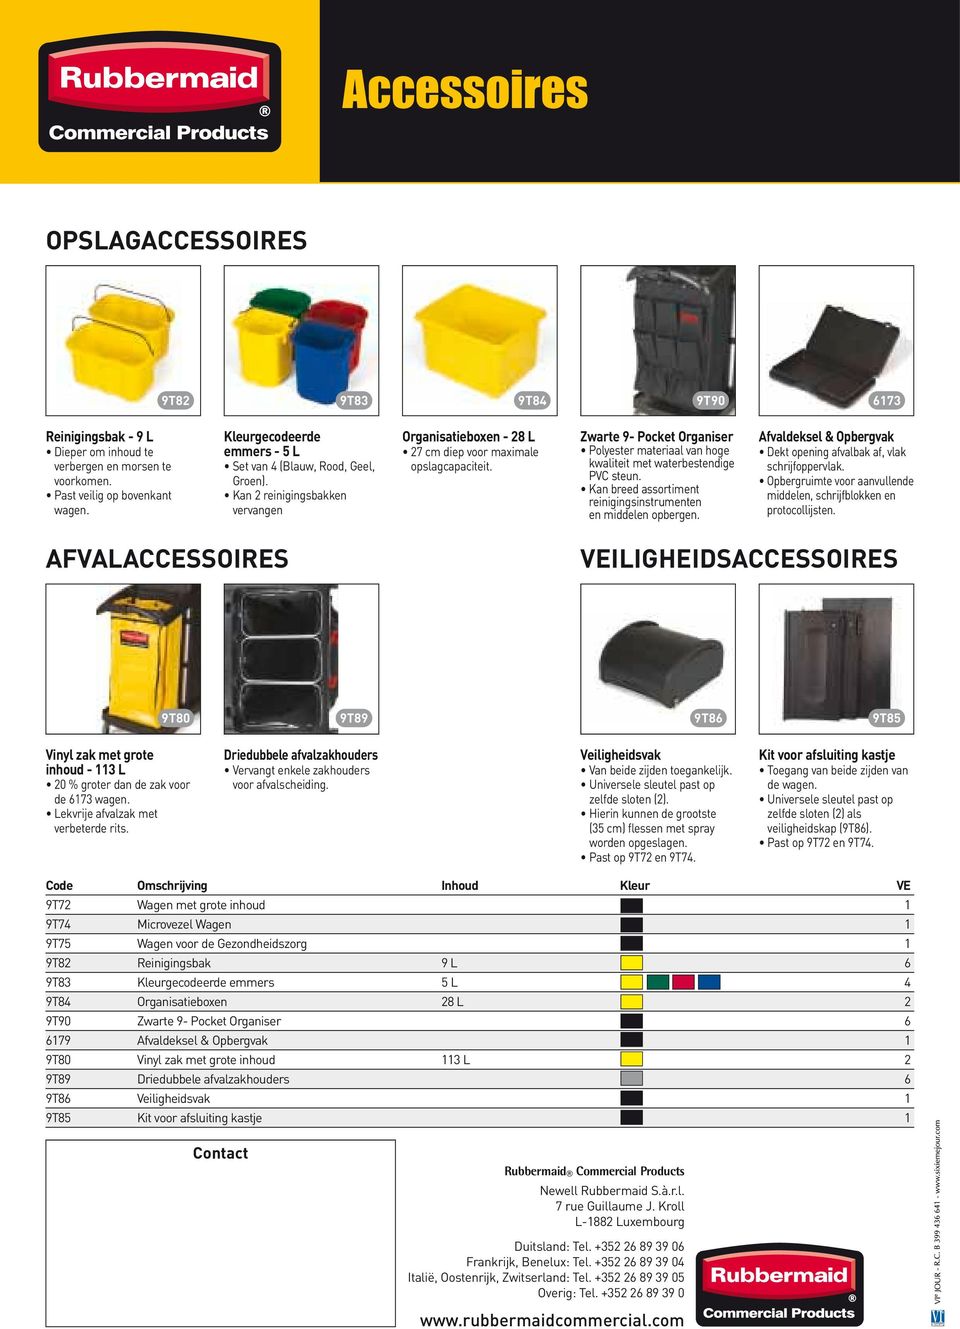 Zwarte 9- Pocket Organiser Polyester materiaal van hoge kwaliteit met waterbestendige PVC steun. Kan breed assortiment reinigingsinstrumenten en middelen opbergen.